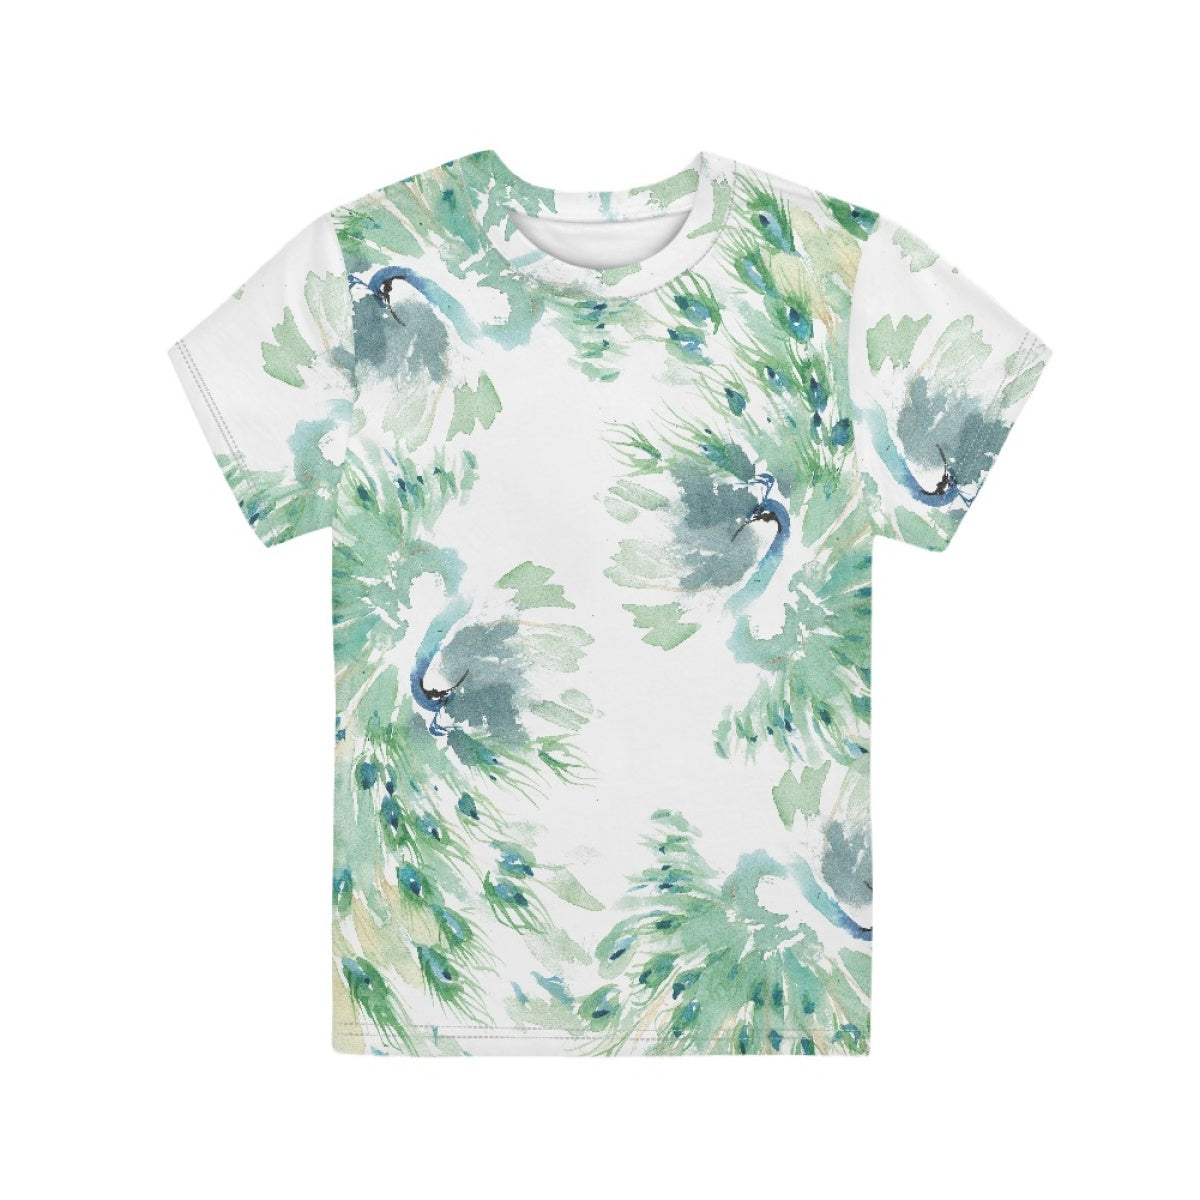 Watercolor Peacock Kids T-Shirt